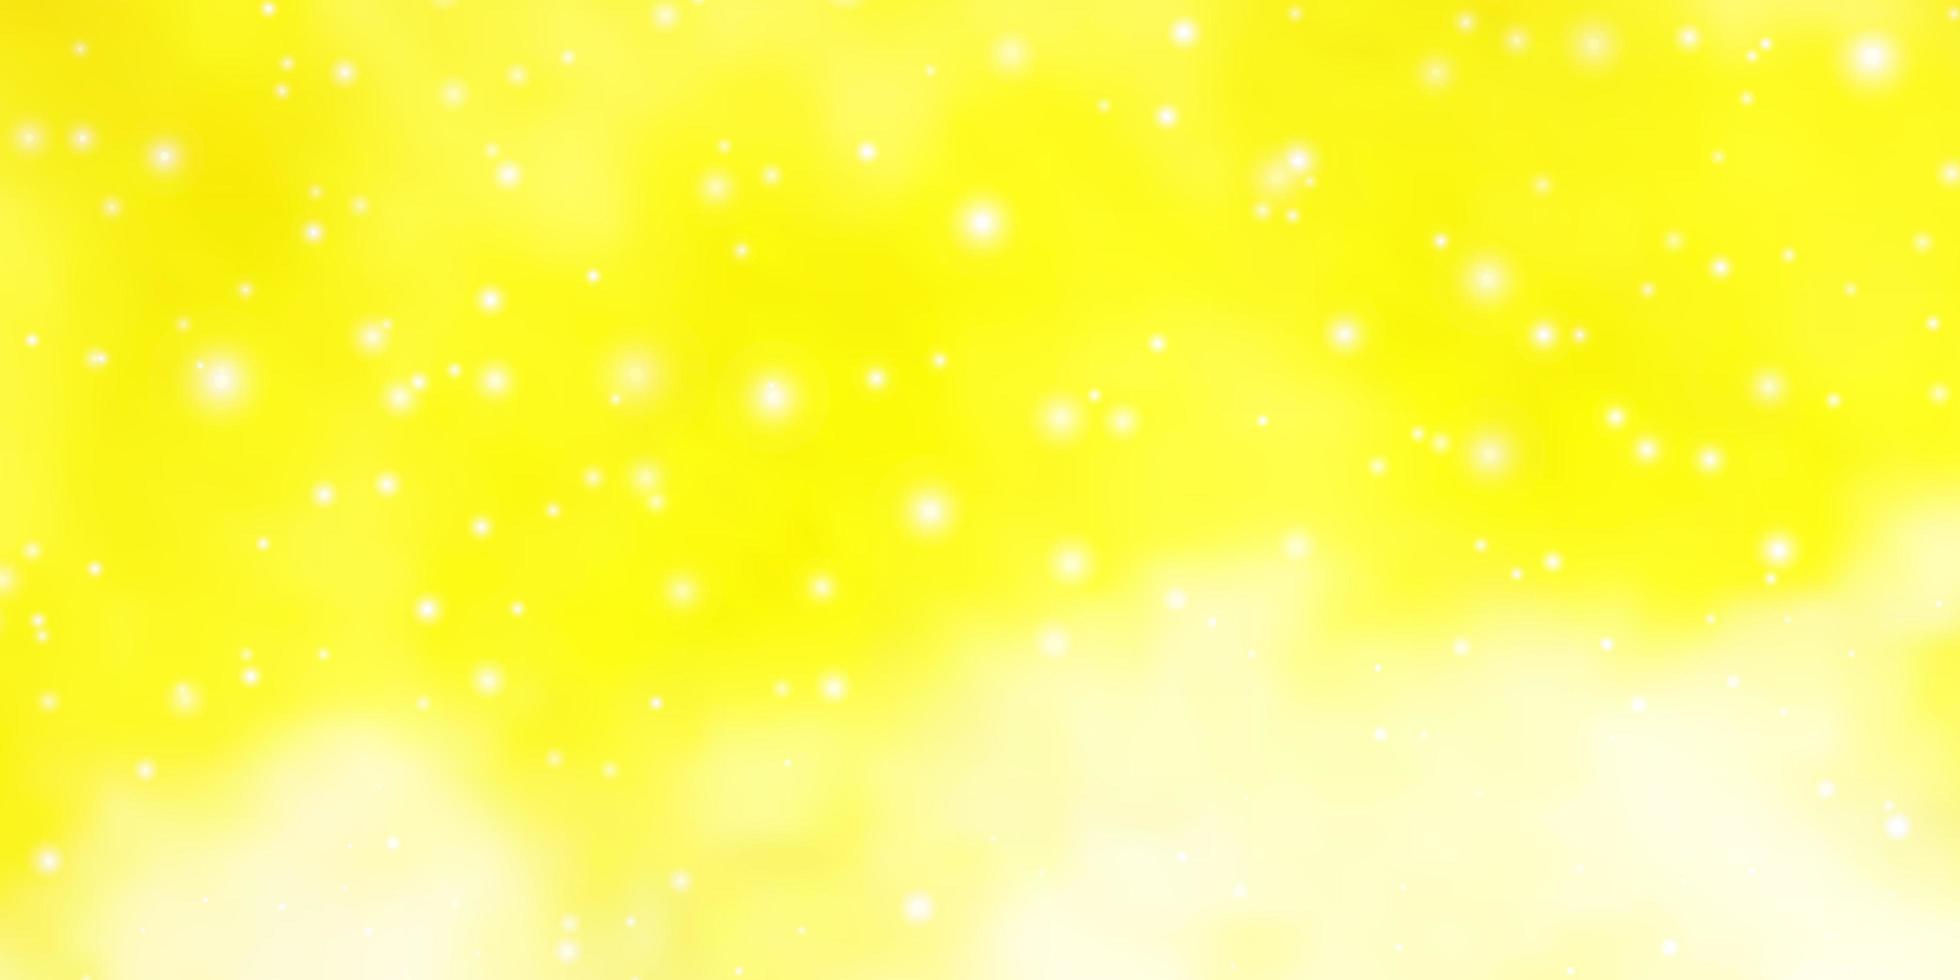 plantilla de vector amarillo claro con estrellas de neón.